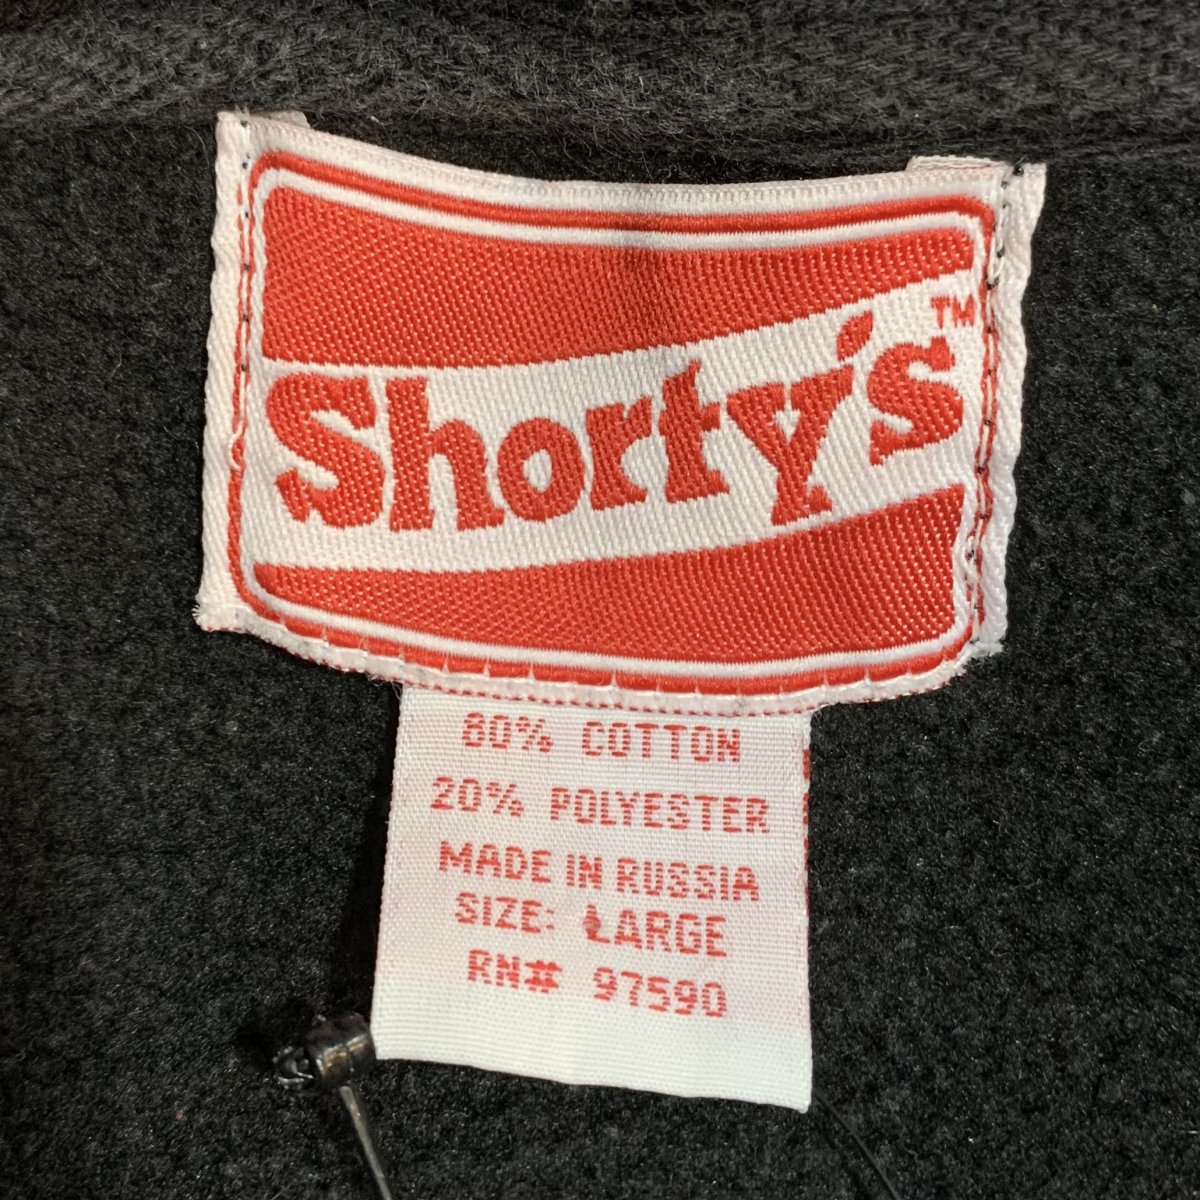 90s SHORTY'S Logo Sweat Hoodie 黒 L ショーティーズ パーカー プル